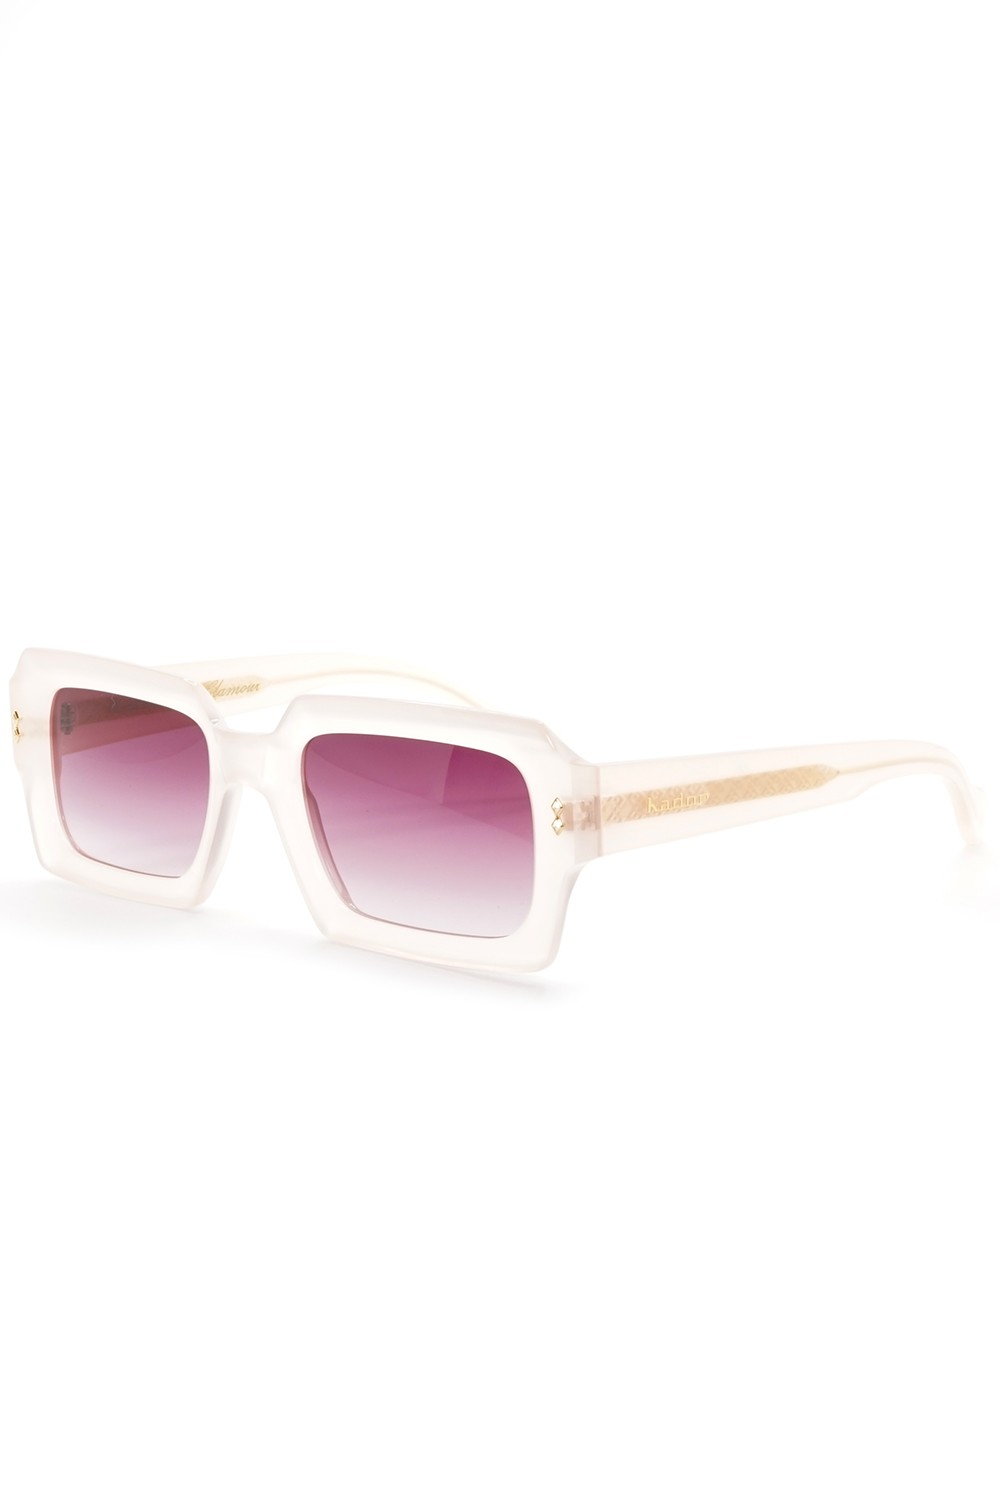 Kador - Occhiali da sole in celluloide rettangolari per donna rosa - EVI